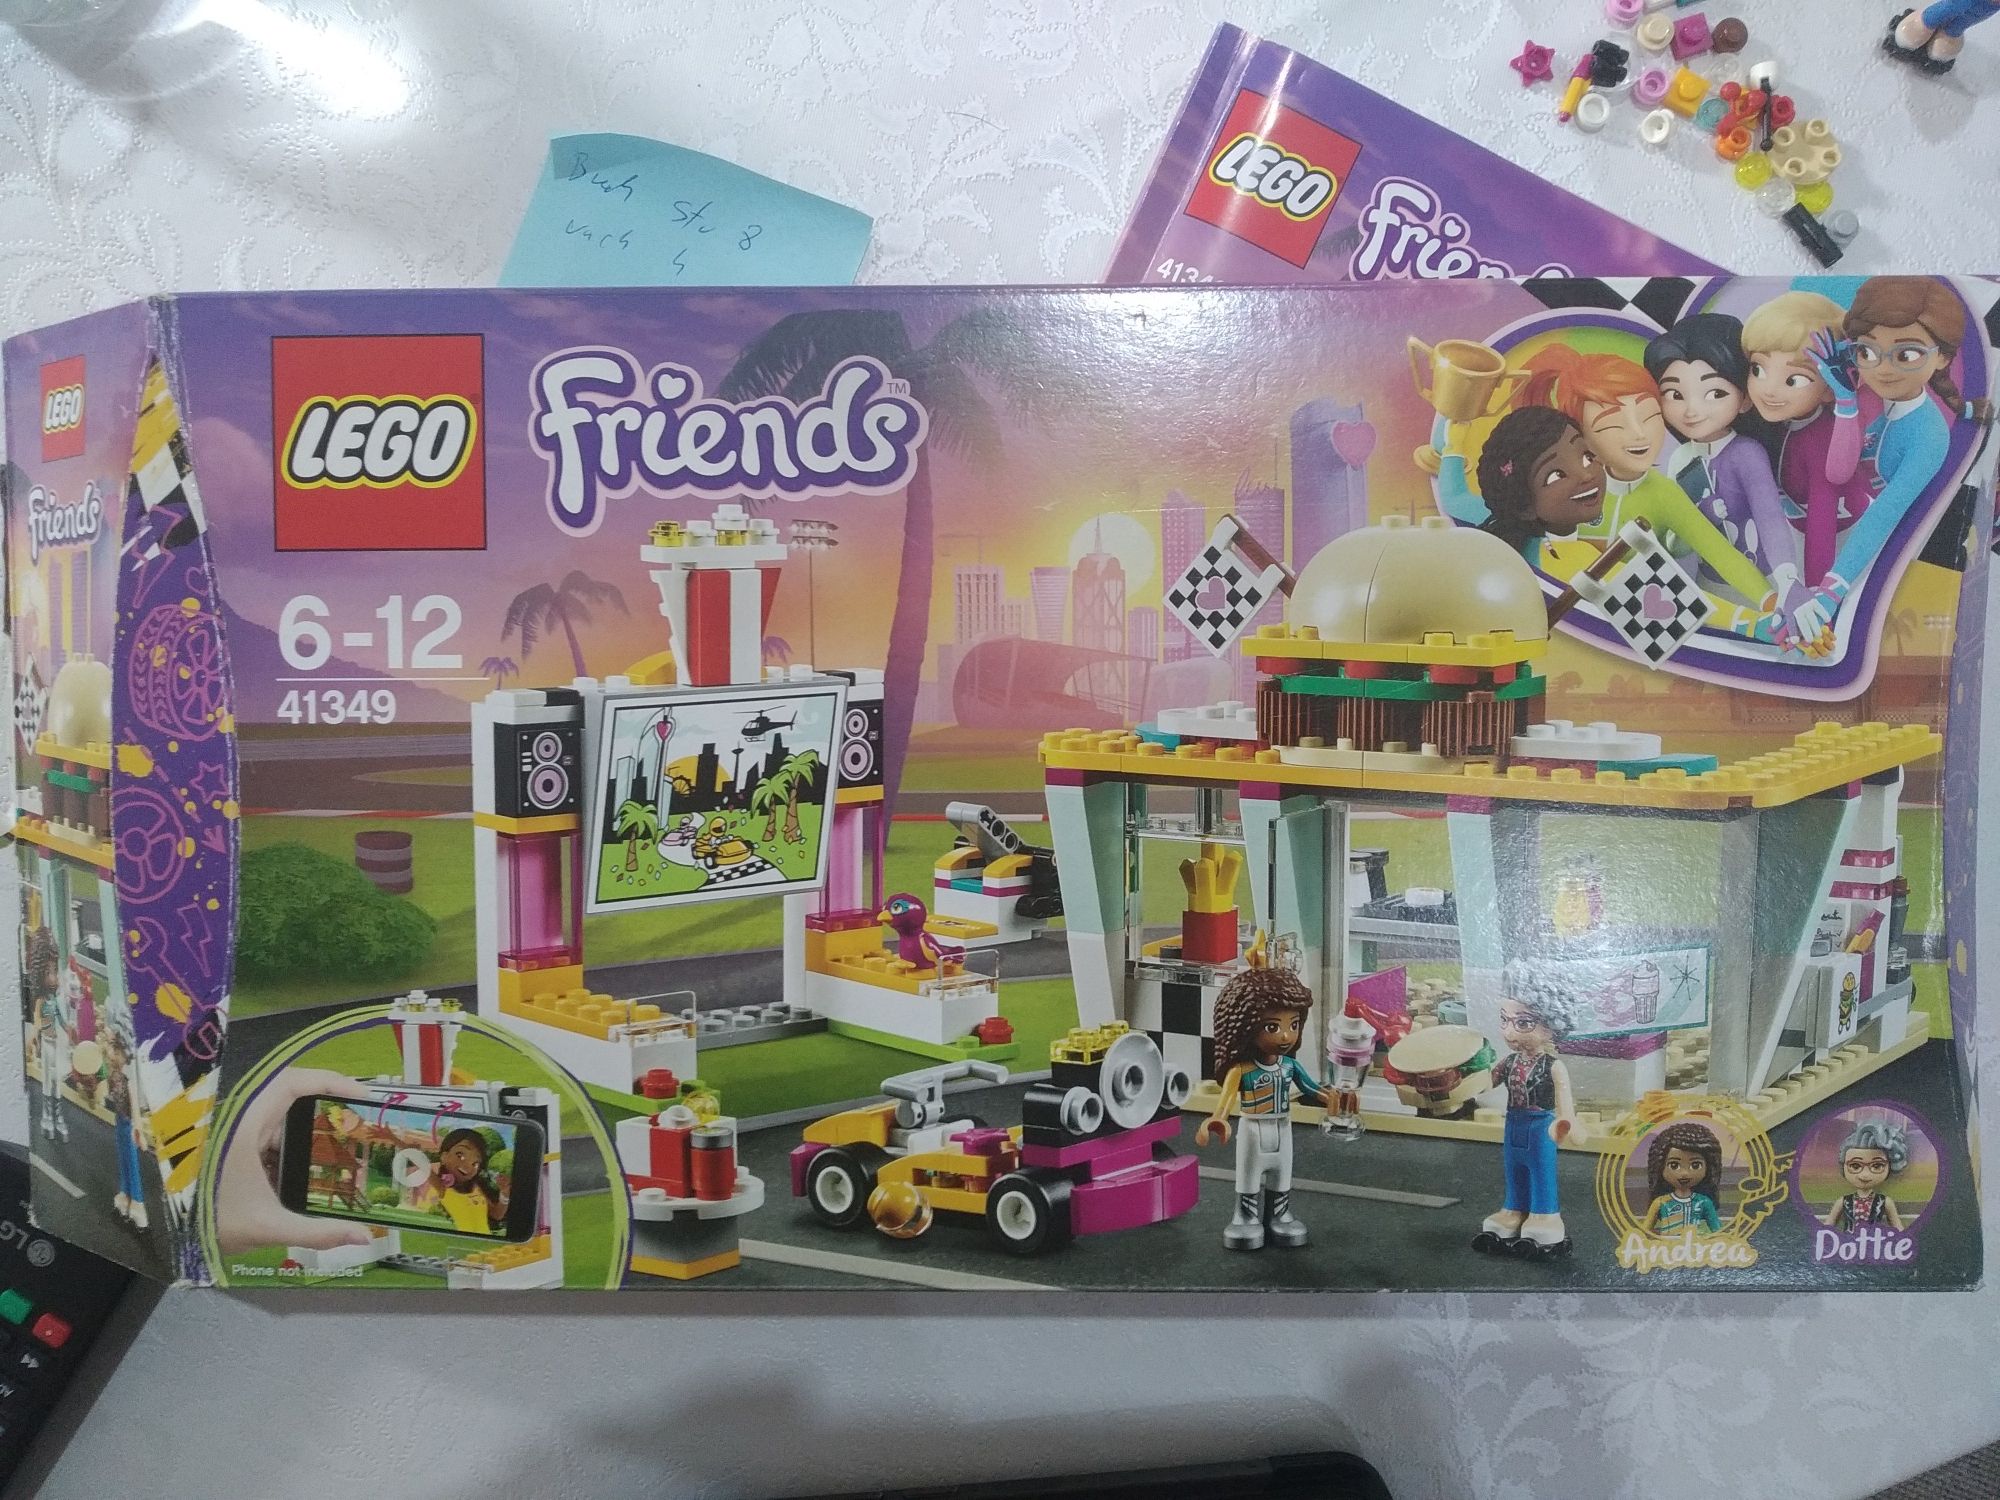 Lego 41349 wyscigowa restauracja
4,9
/5
(26)
0
1
2
3
4
LEGO Friends 4